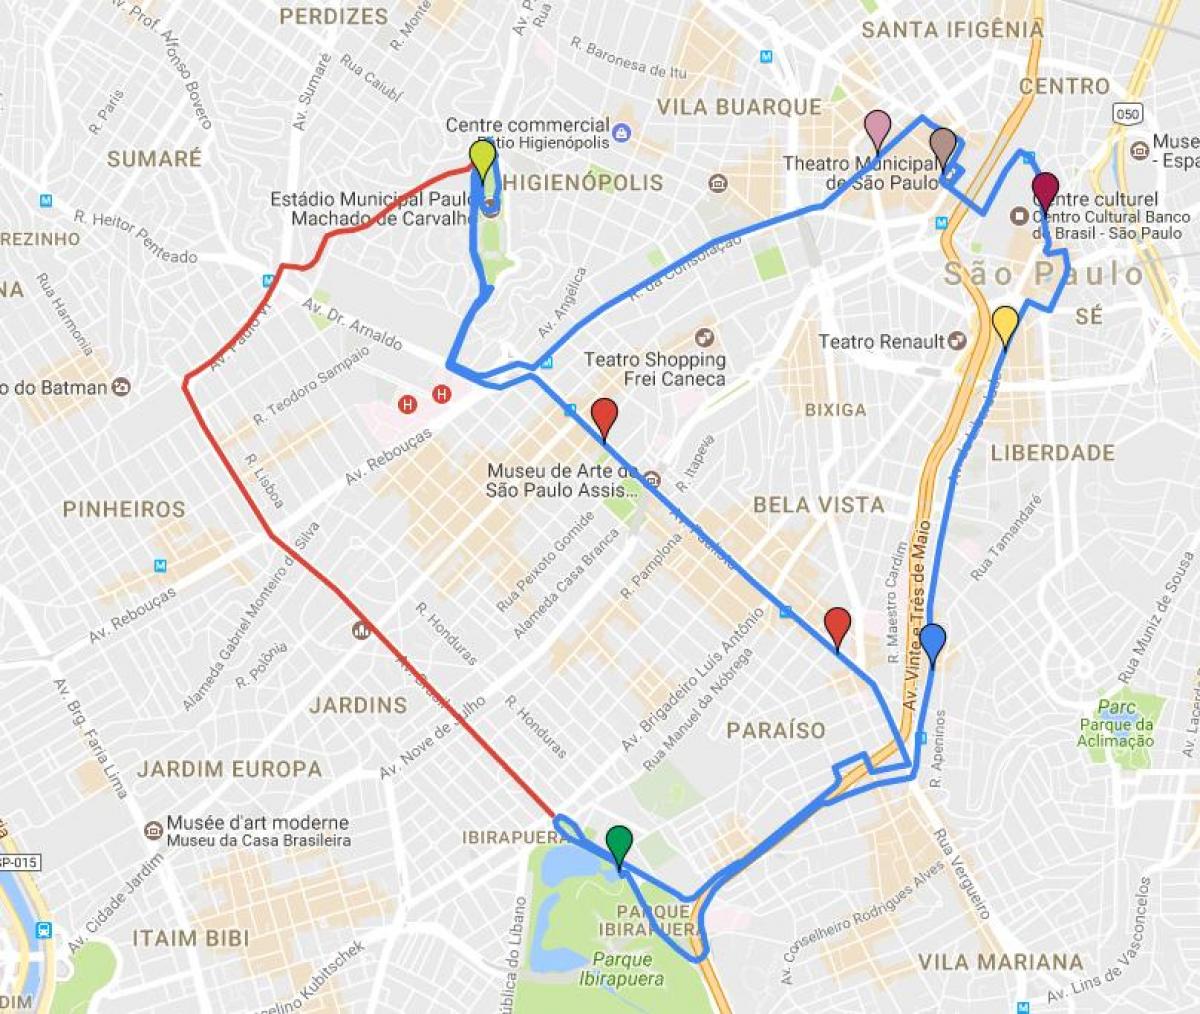 Карта на кръгла туризмо Сао Пауло е на линия